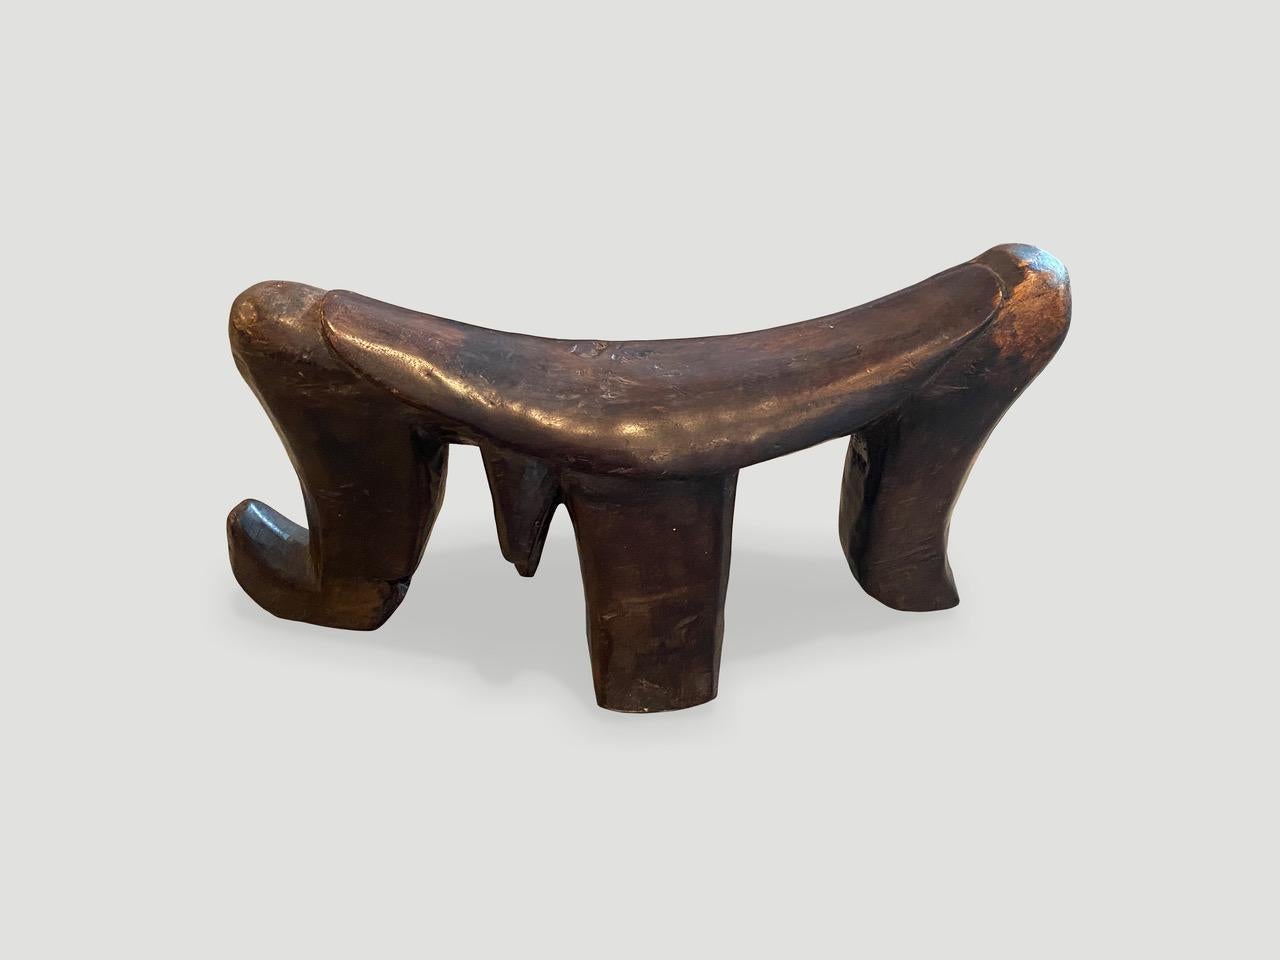 Magnifique appui-tête en bois de qualité muséale. Cette pièce d'art rare du Soudan présente une patine étonnante. Sculpté à la main dans un seul bloc de bois par la tribu Dinka. Circa 1900.

Ce repose-tête a été sourcé dans l'esprit de Wabi-Sabi,